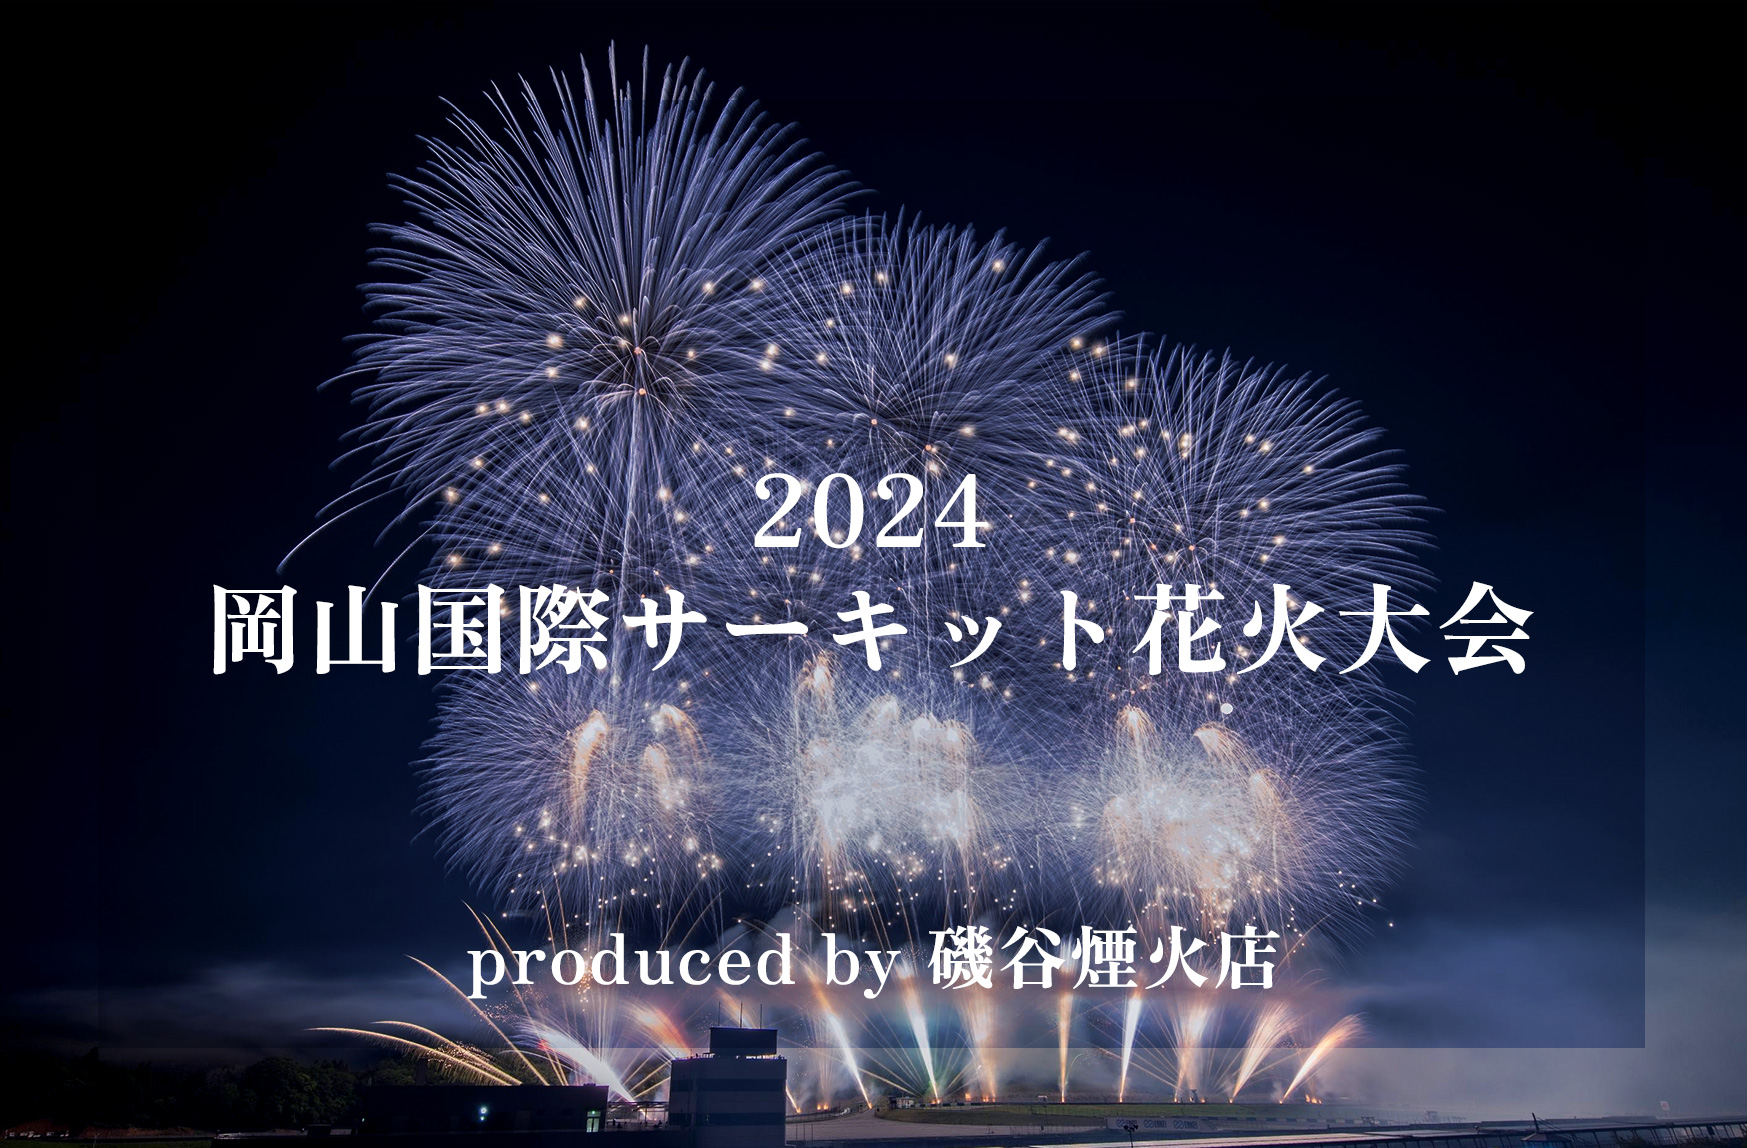 2024 岡山国際サーキット花火大会 produced by 磯谷煙火店ヘッダー画像